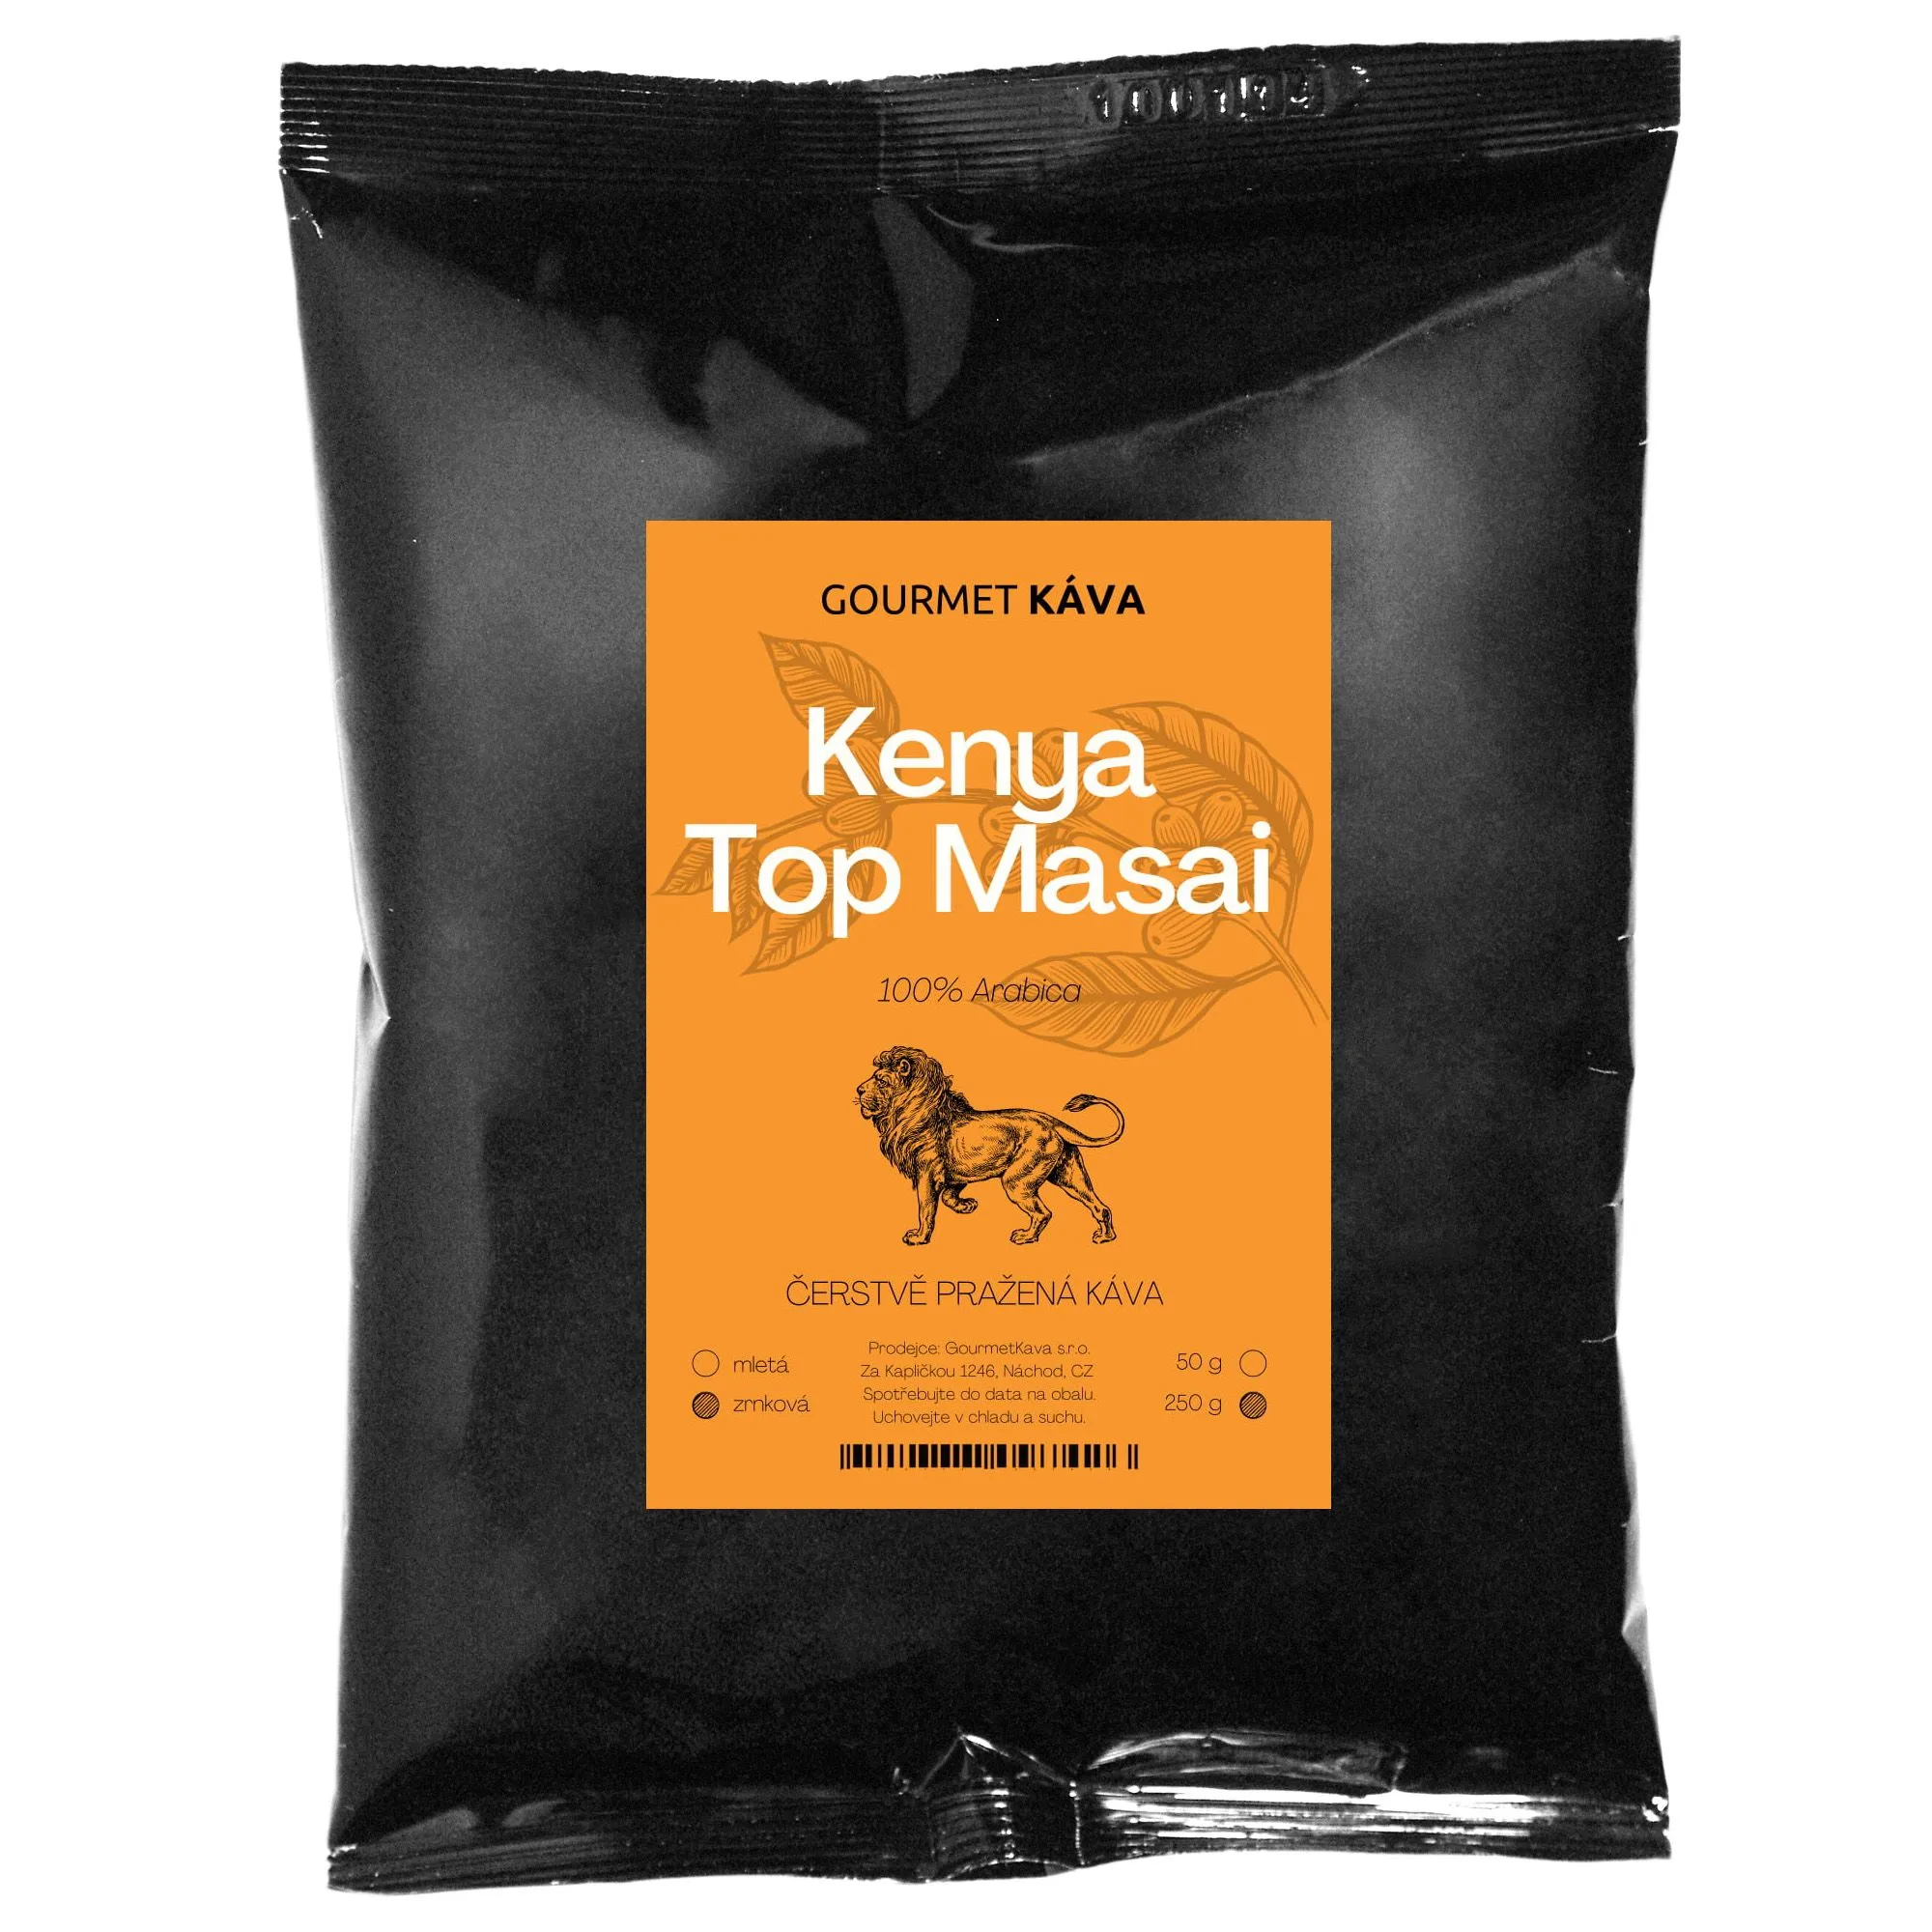 Káva Keňa Top Masai 250g,Keňa Top Masai, zrnková káva arabica